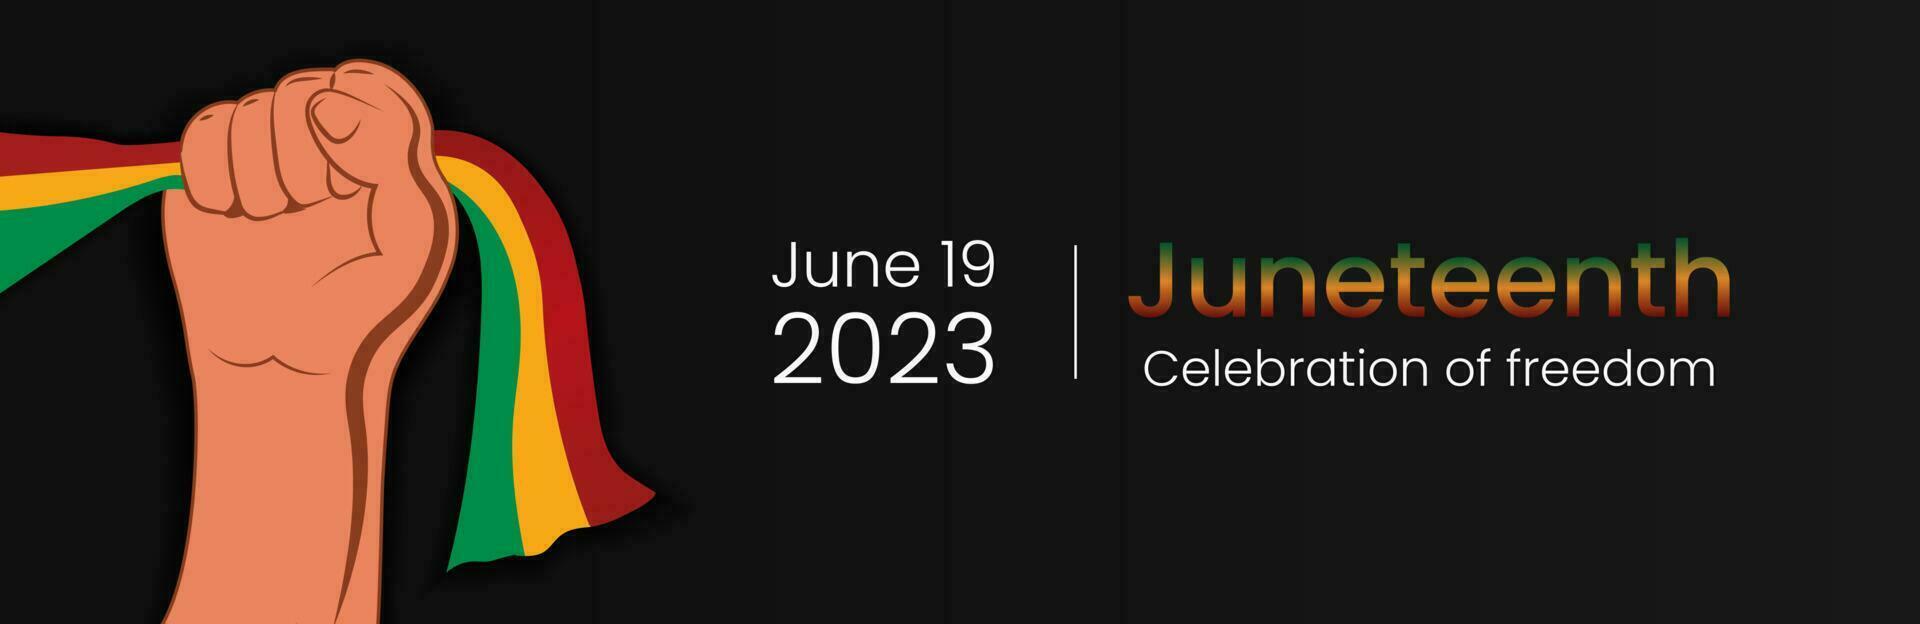 juneteenth vrijheid dag Aan juni 19 2023. Afrikaanse Amerikaans bevrijding dag. zwart, rood en groente. vector